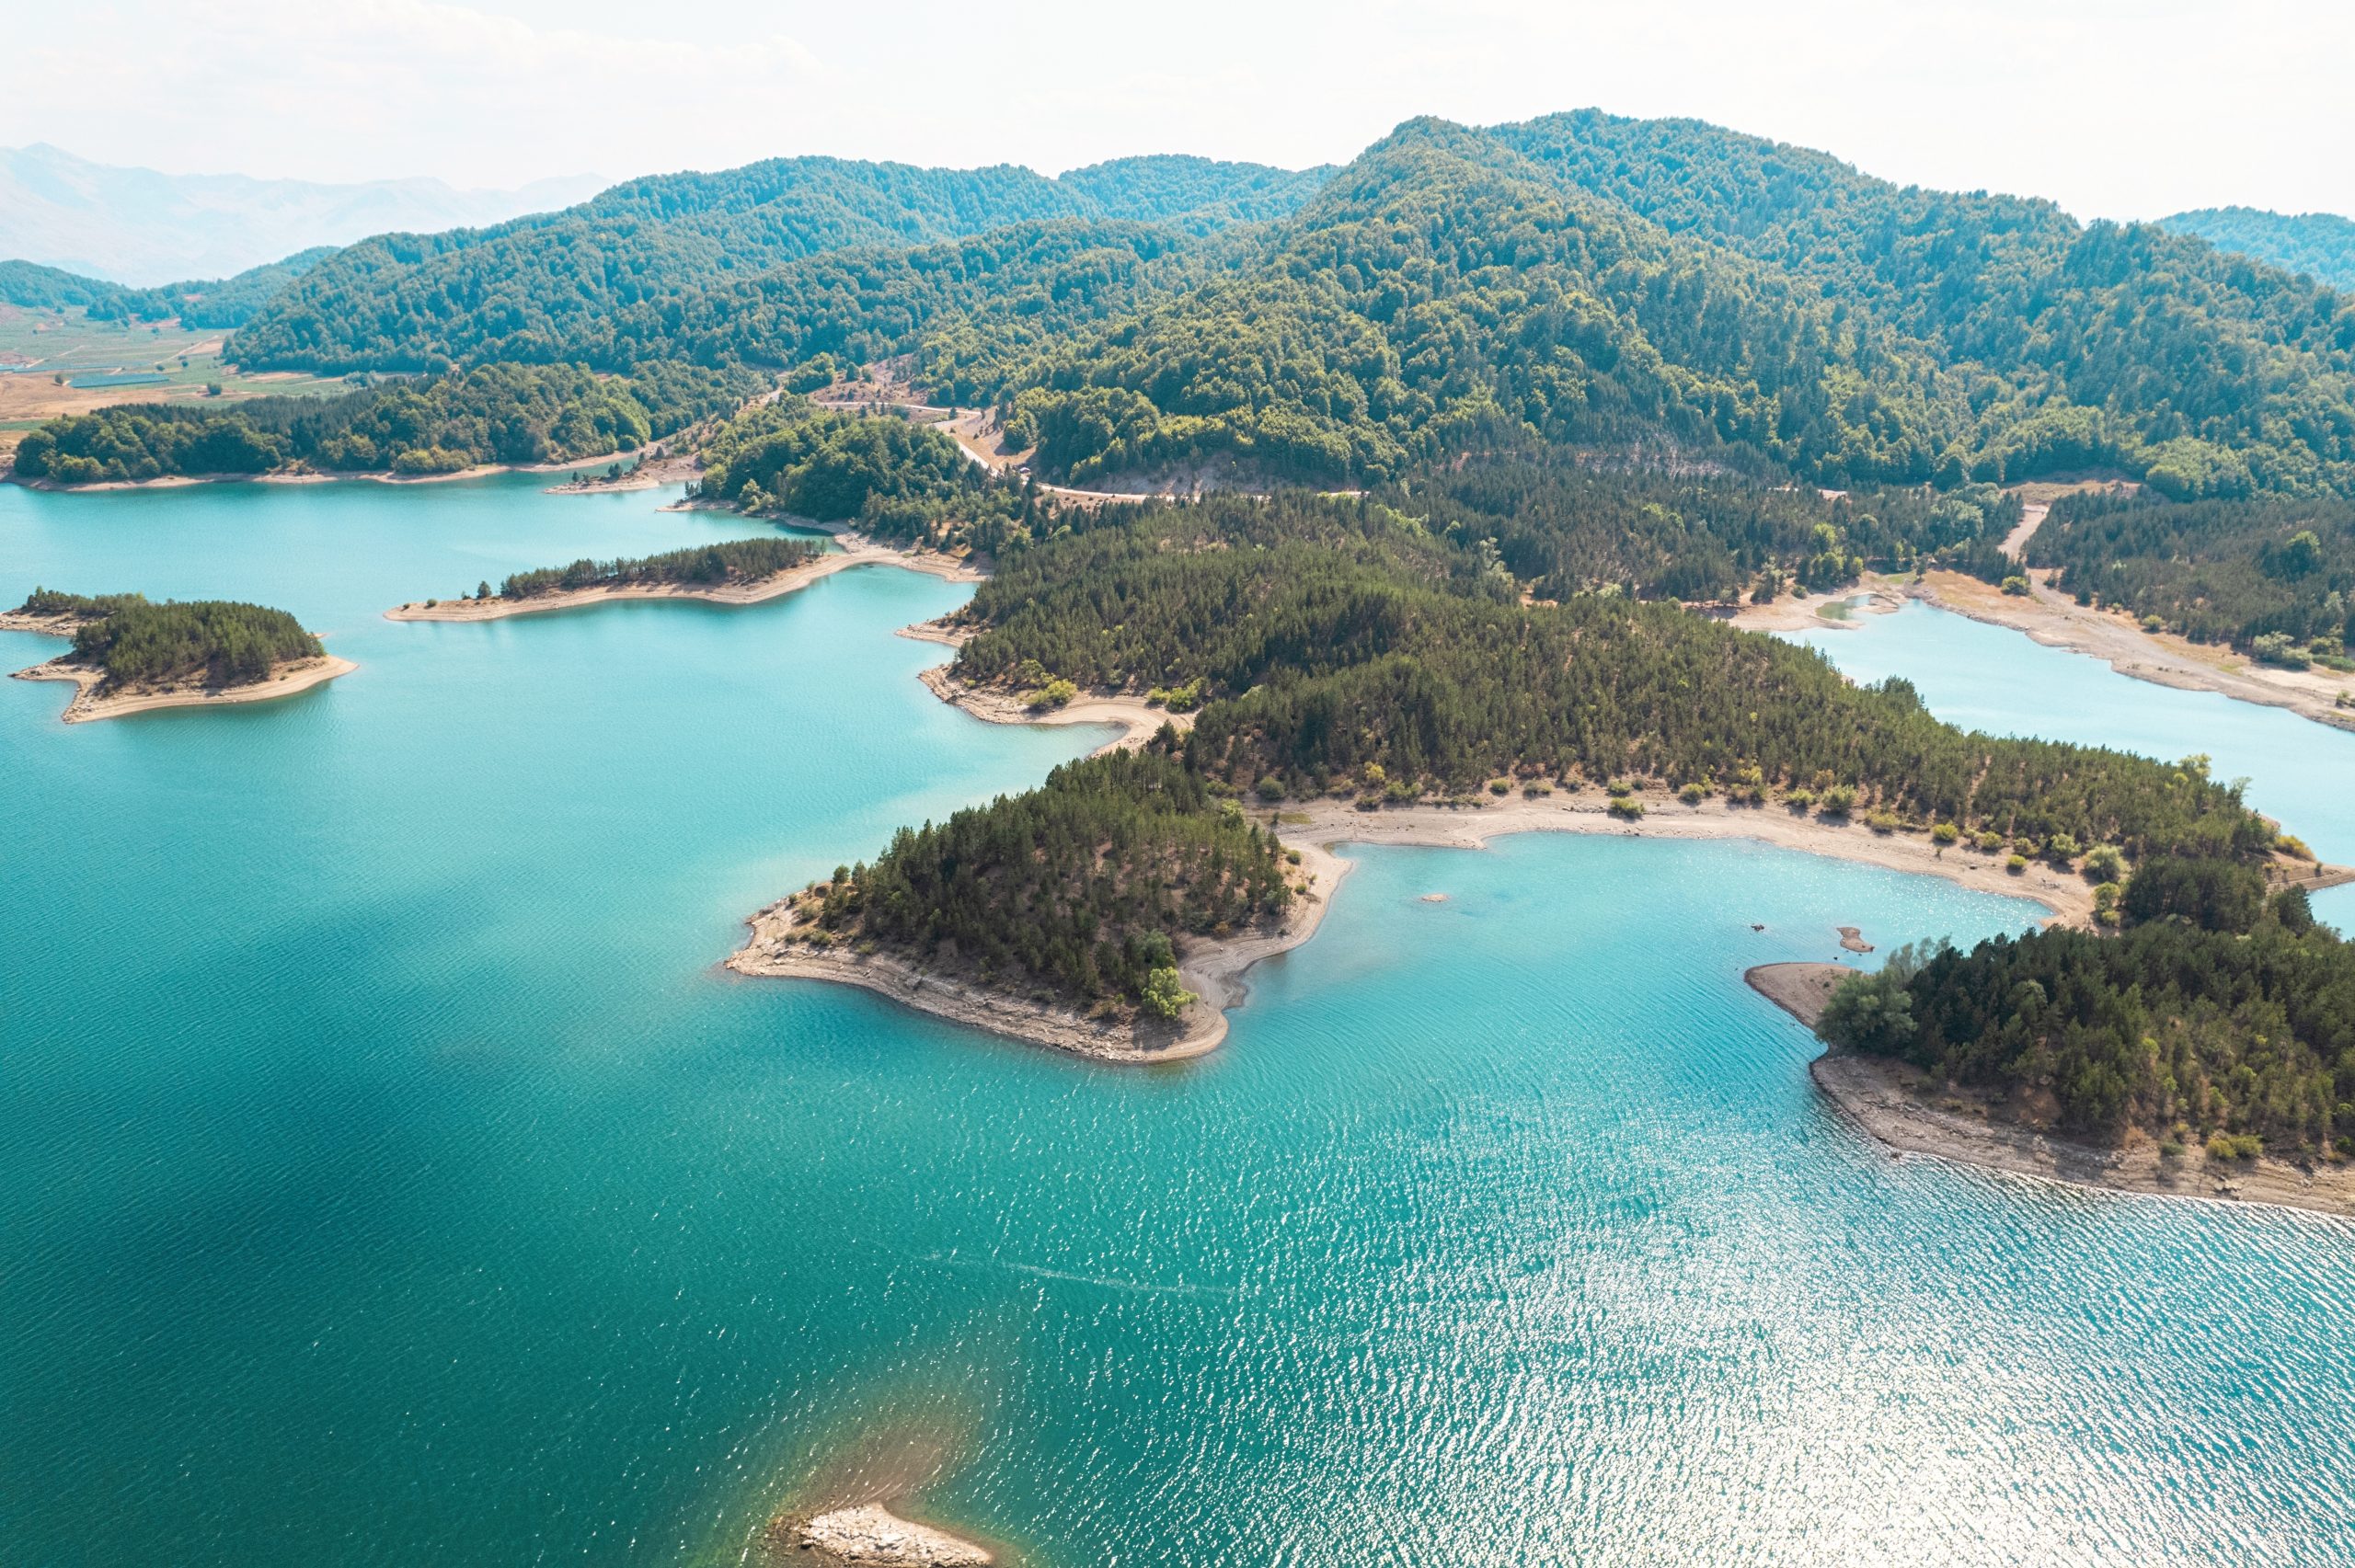 Breathtaking Drone Footage of "Blue Lake" in Greece